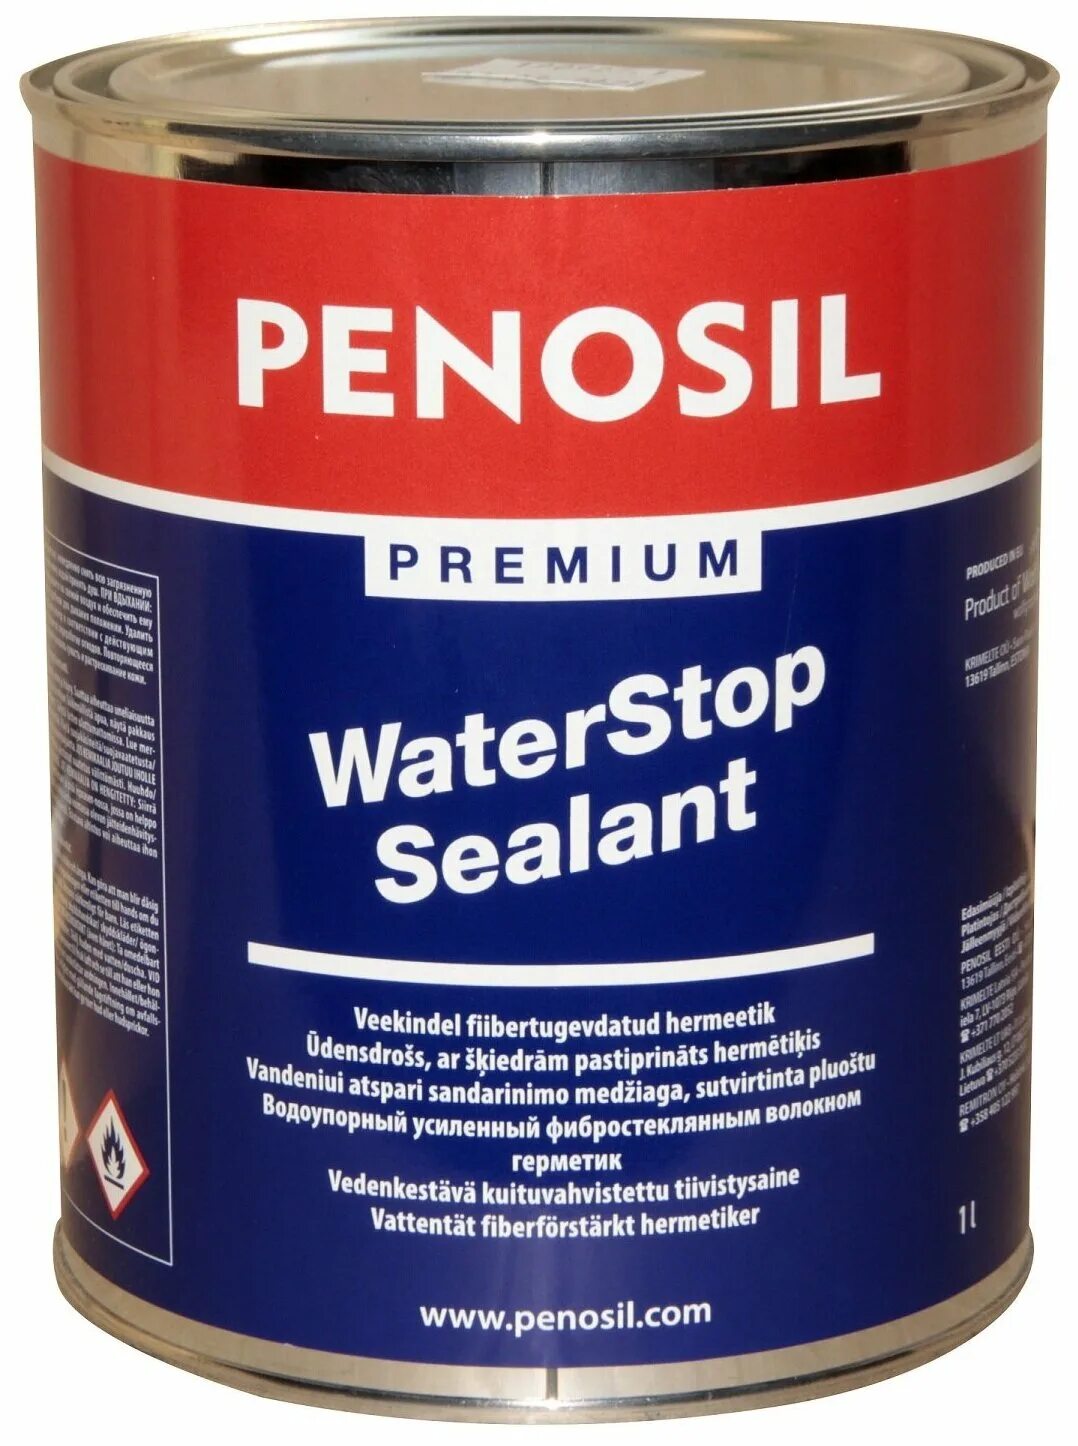 Водостойкий герметик для наружных. Penosil Premium waterstop. Penosil герметик. Пеносил герметик. Герметик водостойкий.